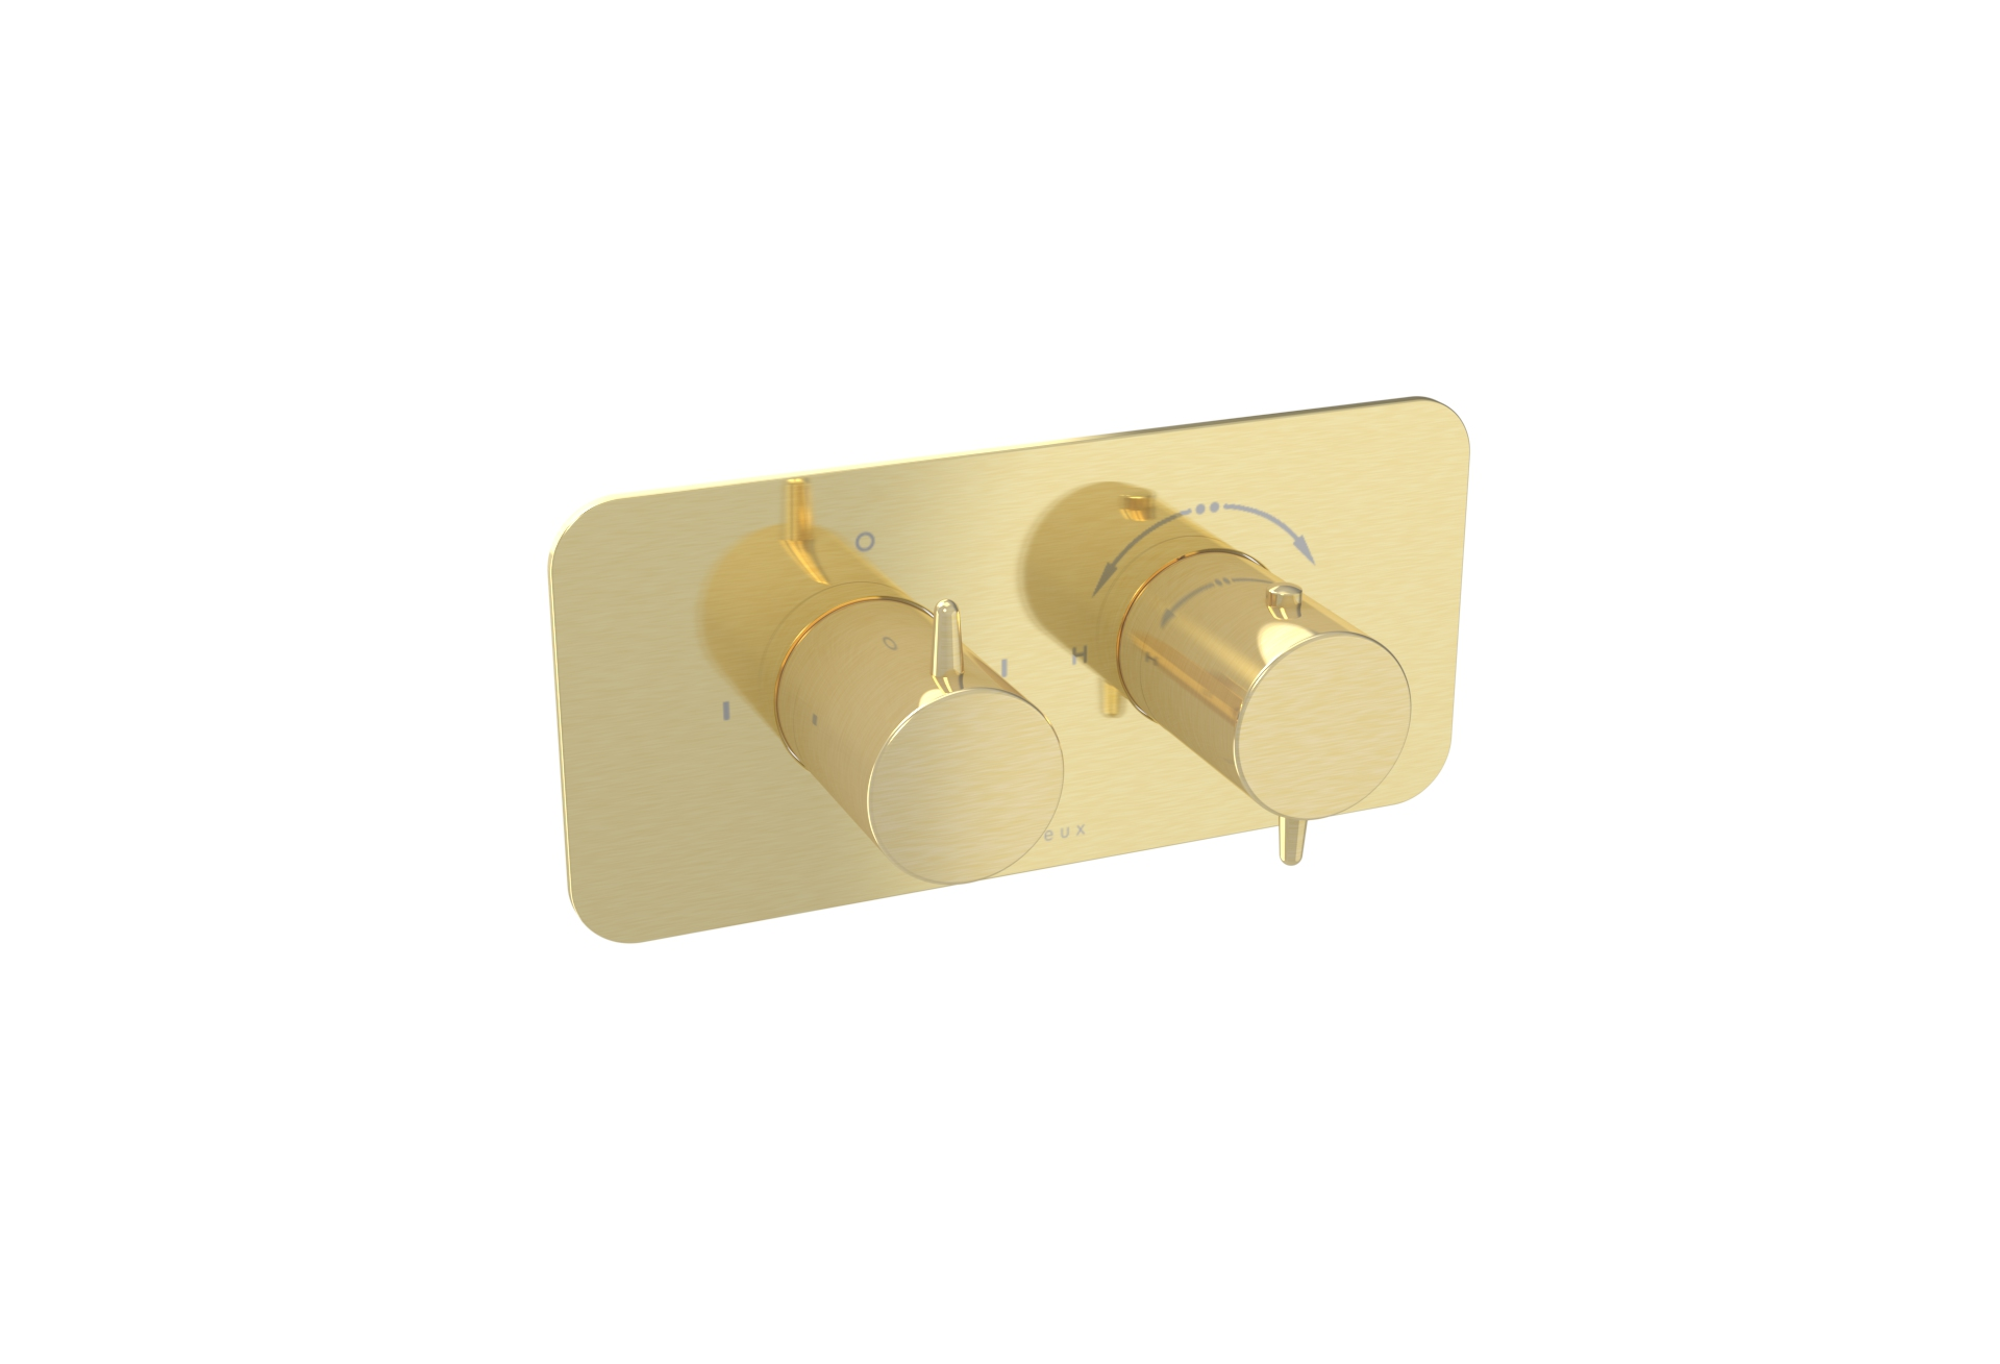 EDEN 2 way thermostatic shower valve kit in landscape - Brushed Brass